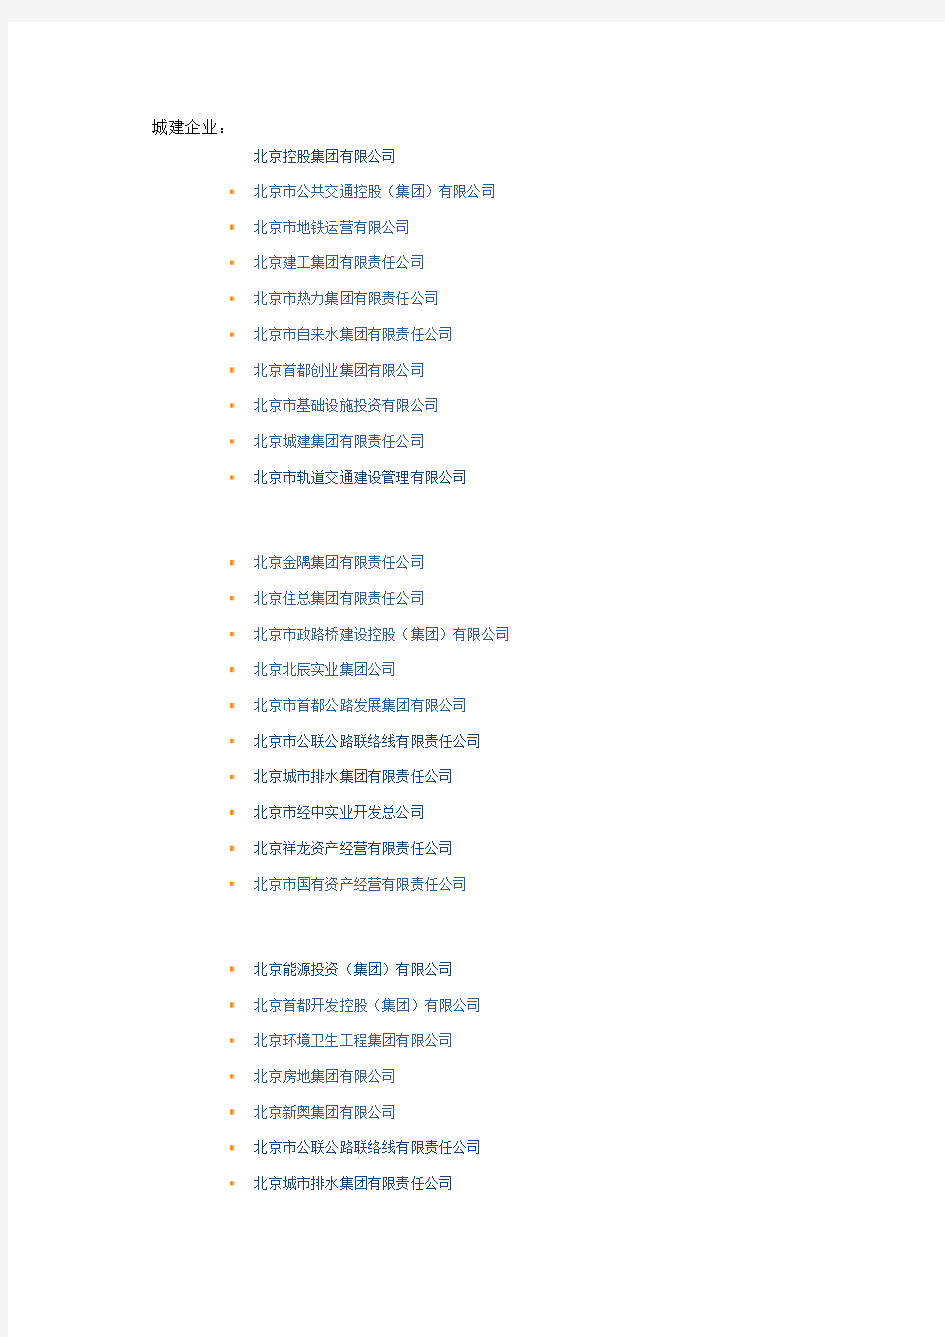 北京市国资委下属企业名单